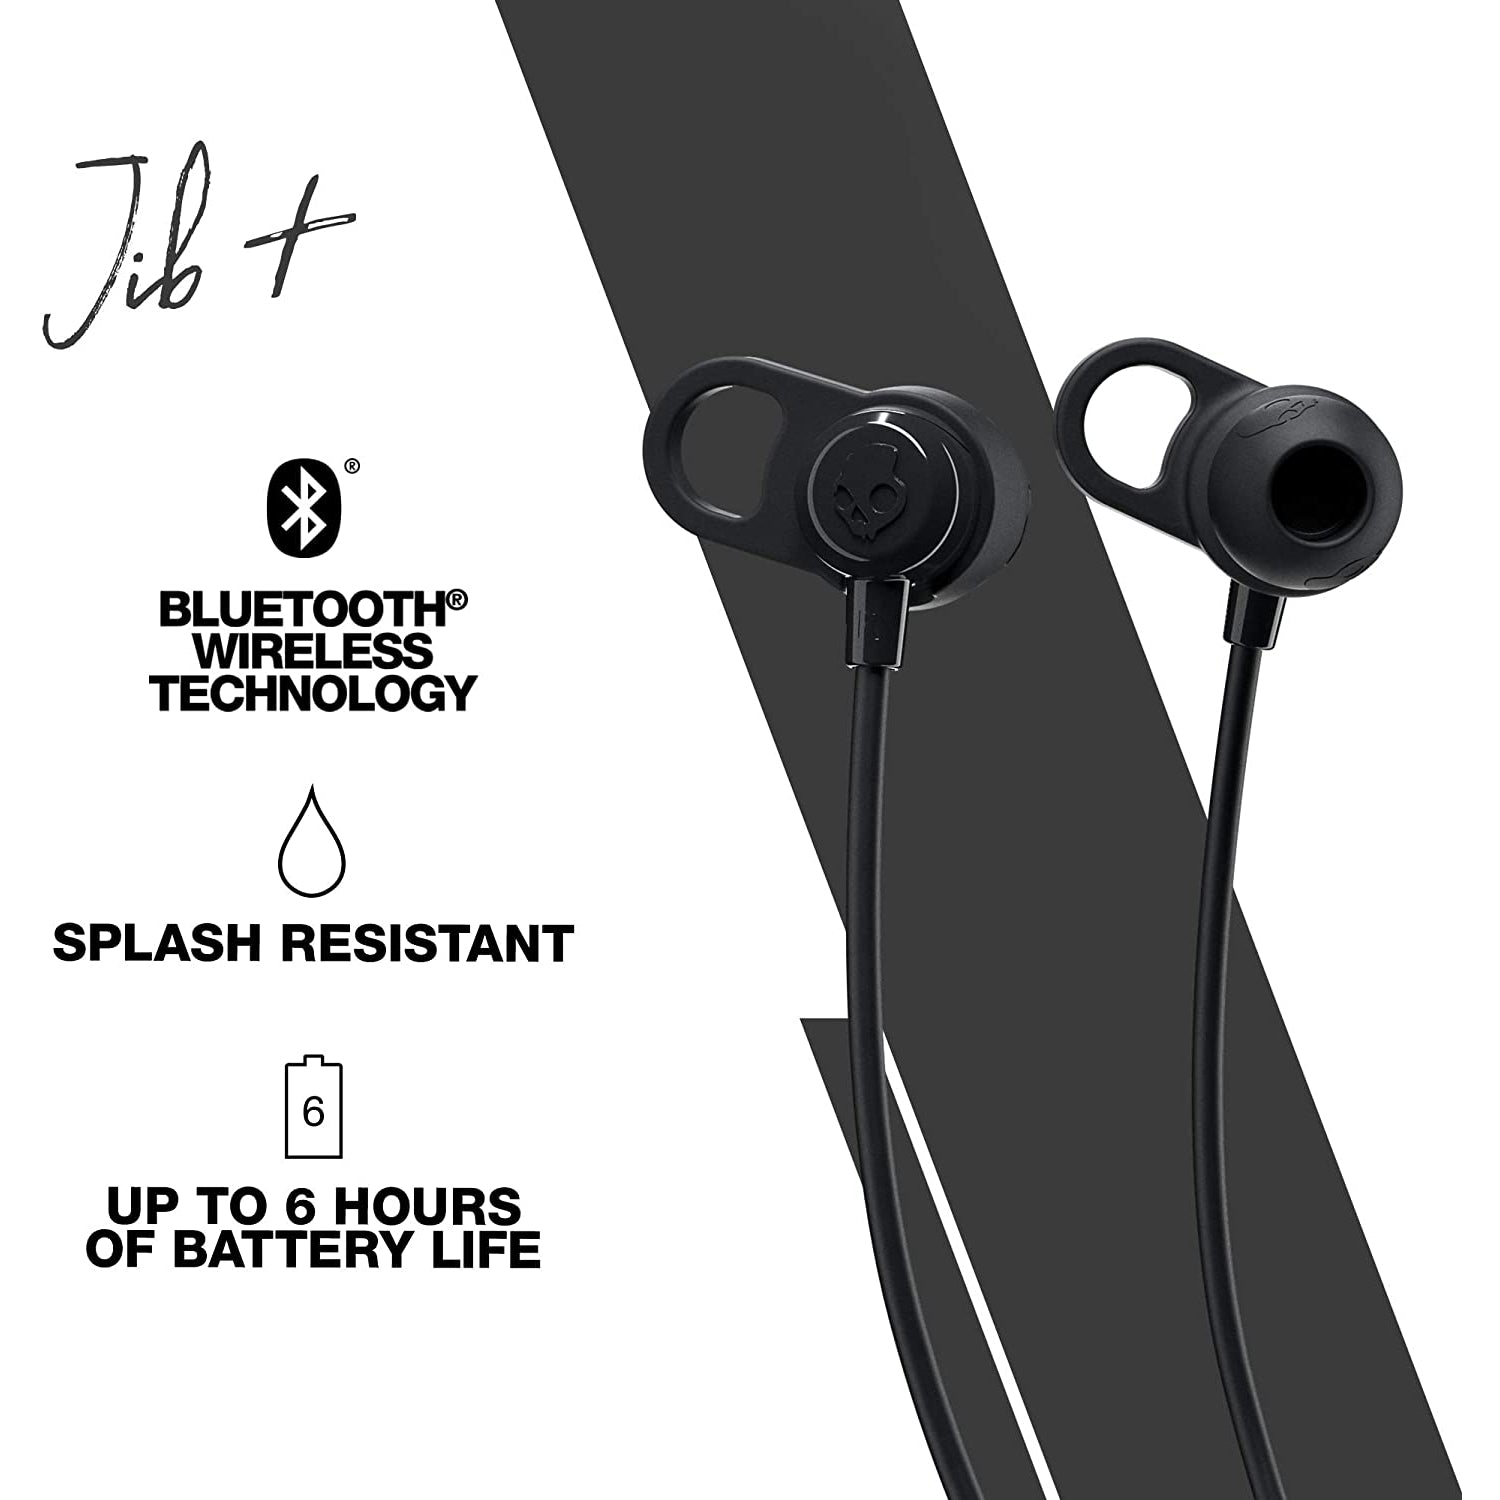 Skullcandy Jib+ Wireless In-Ear Earbuds with Microphone